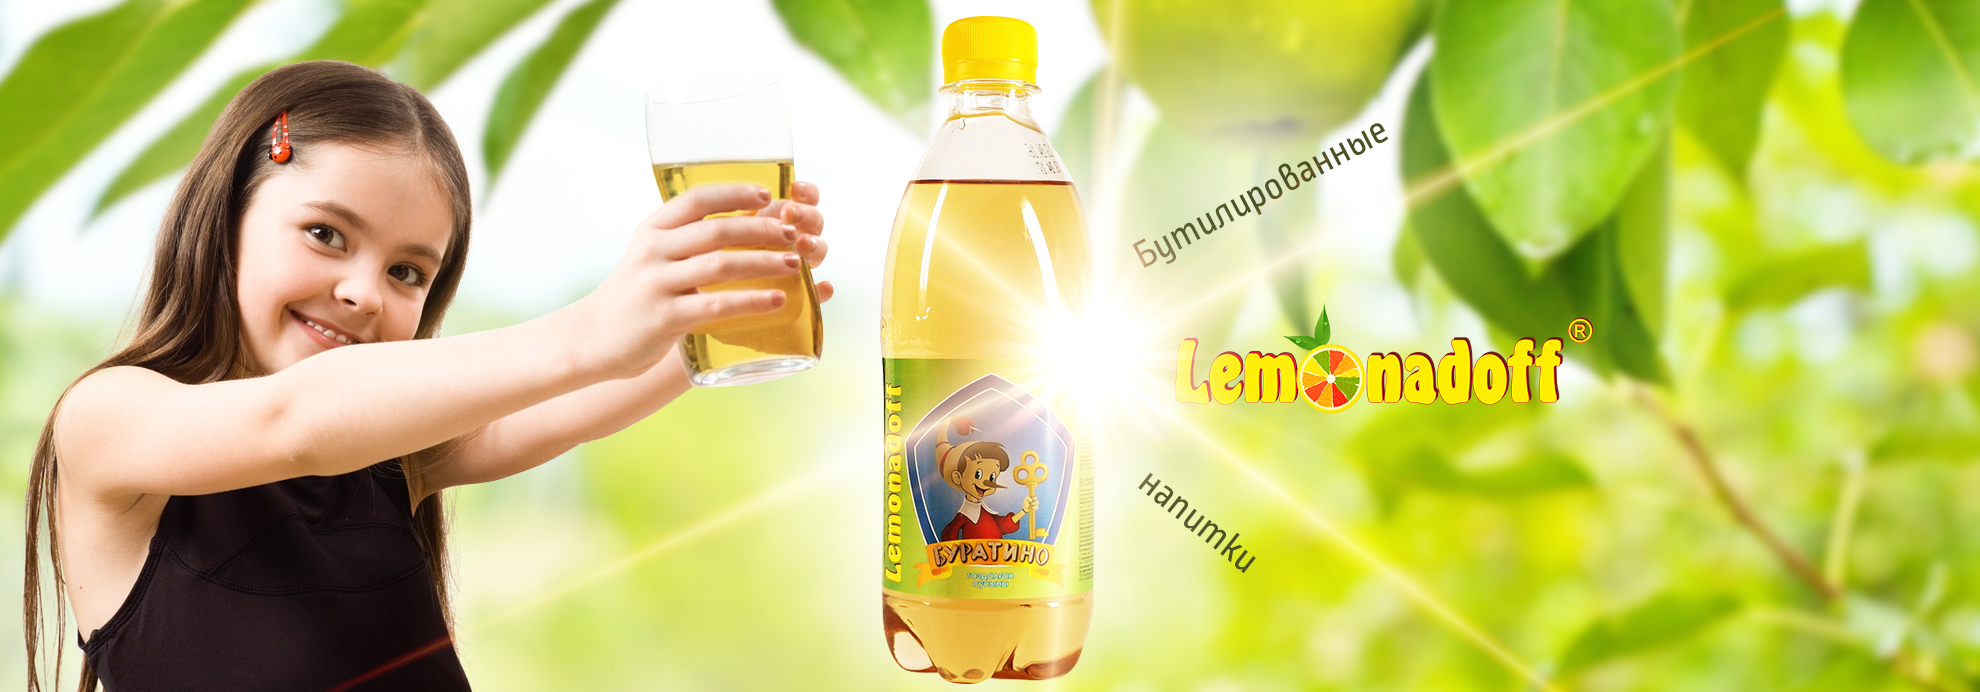 Компания Lemonadoff - бутилрованные напитки